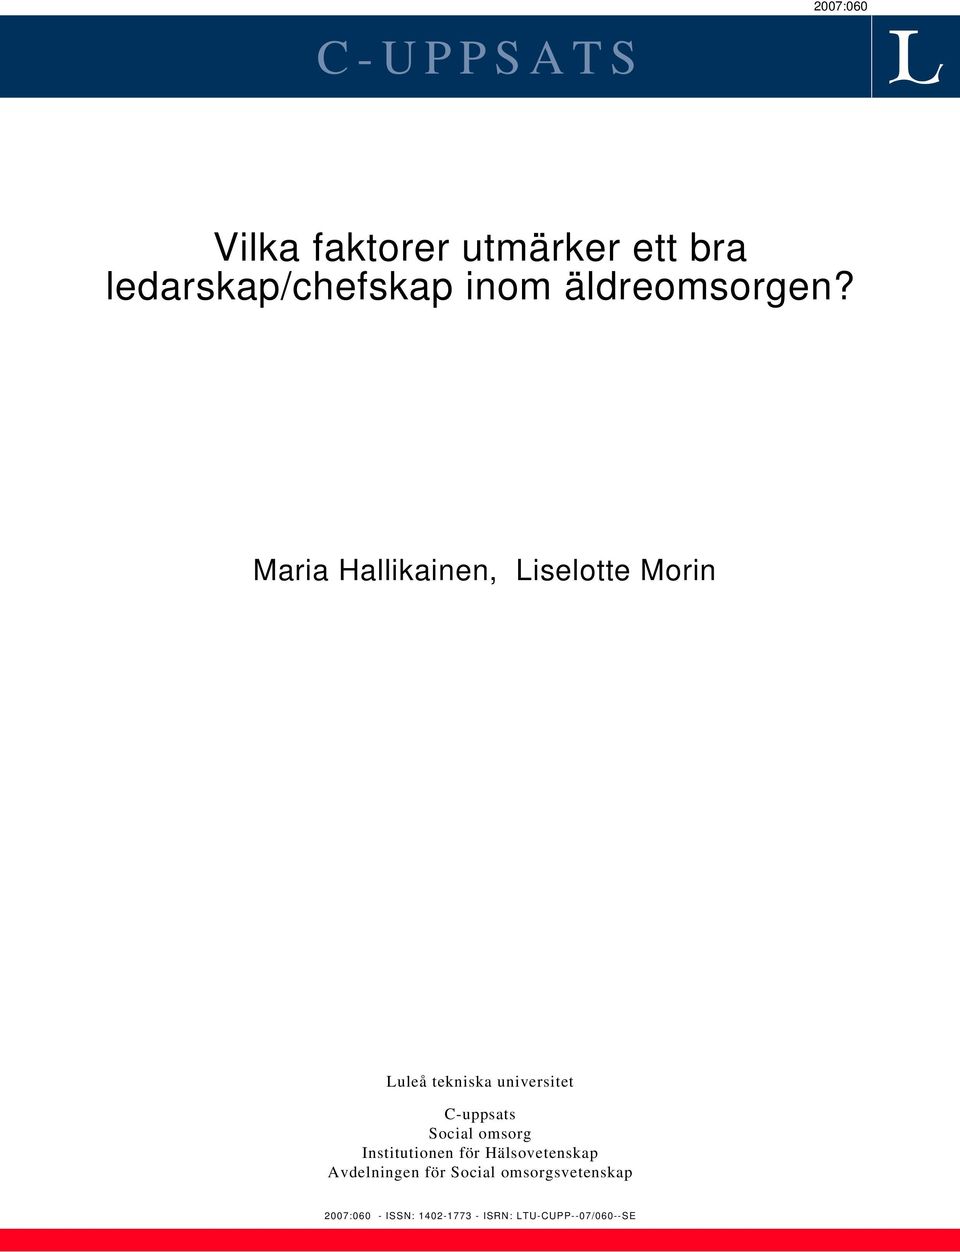 Maria Hallikainen, Liselotte Morin Luleå tekniska universitet C-uppsats